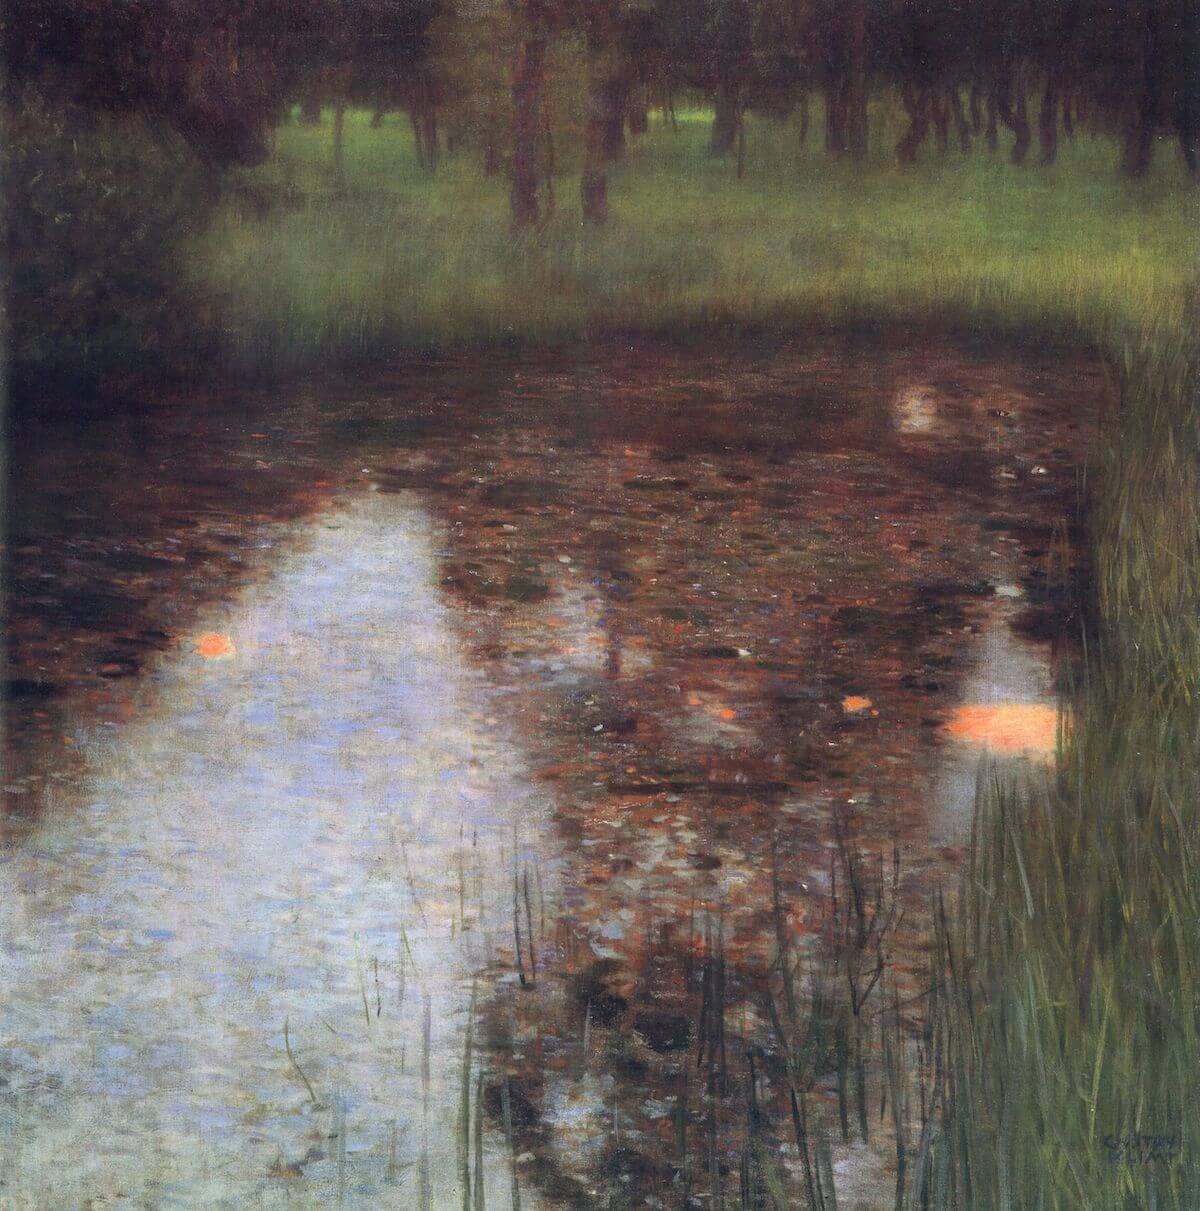 The Swamp, 1900 by Gustav Klimt